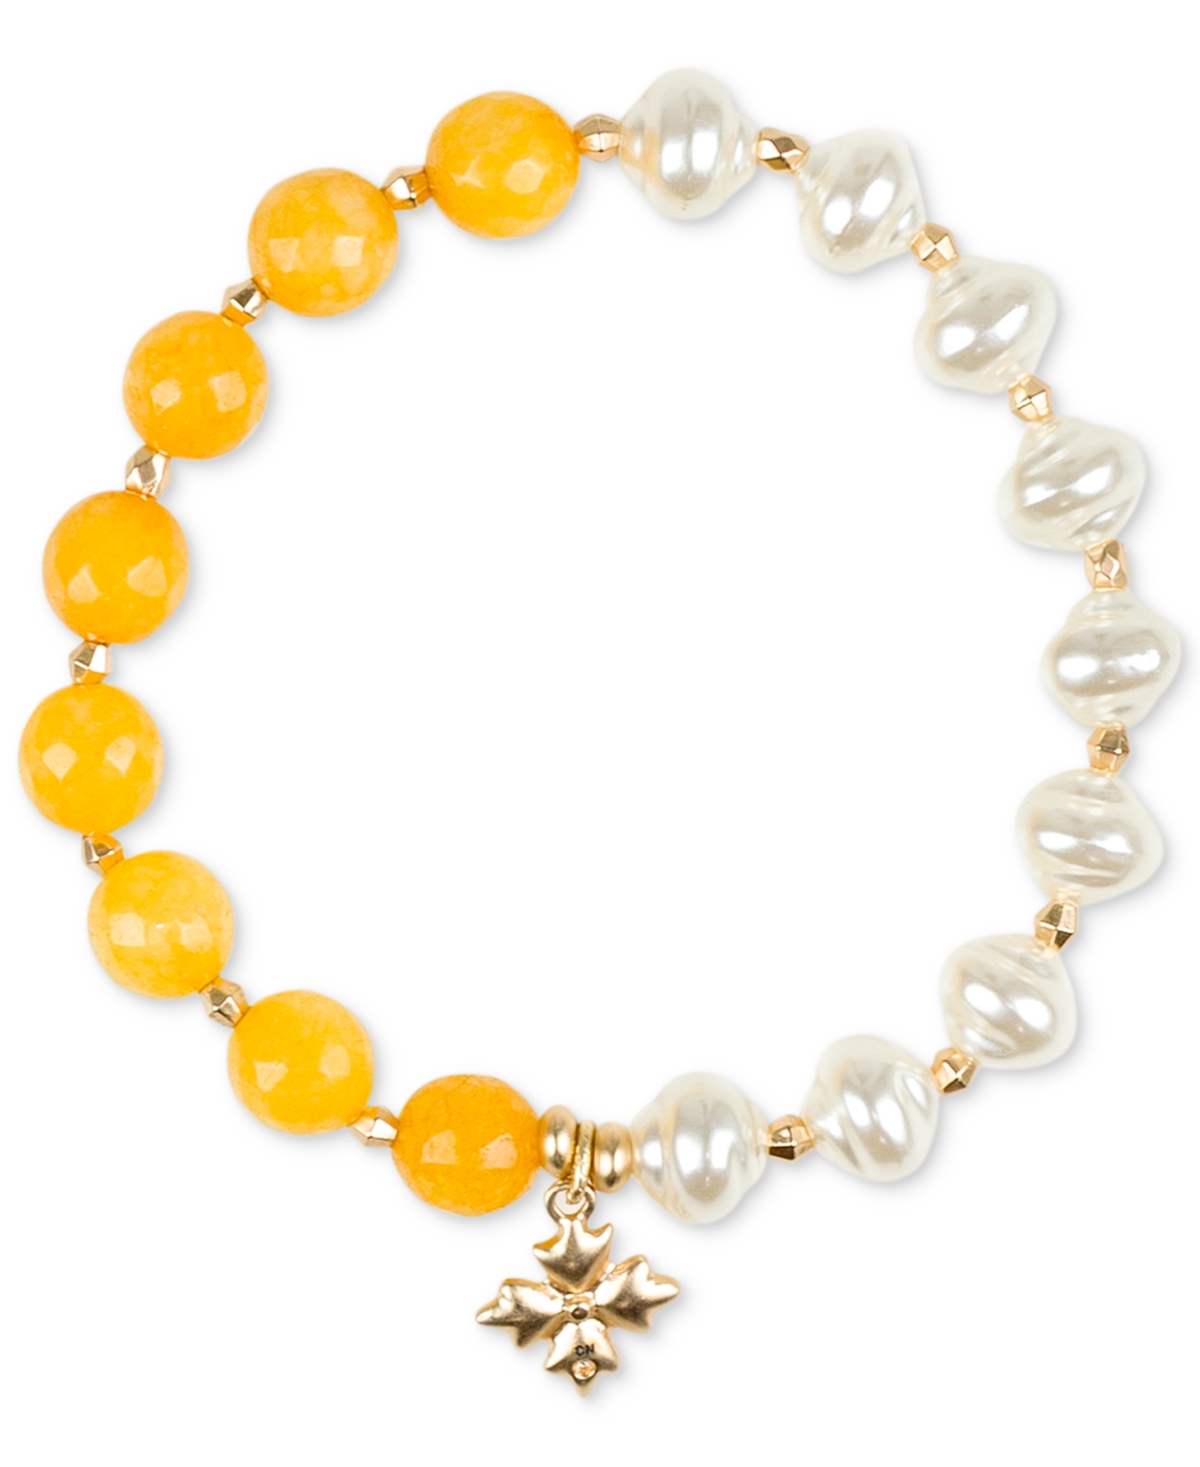 Gold-Tone Mixed Bead Stretch Bracelet - Egyptian Gold, Yellow, White